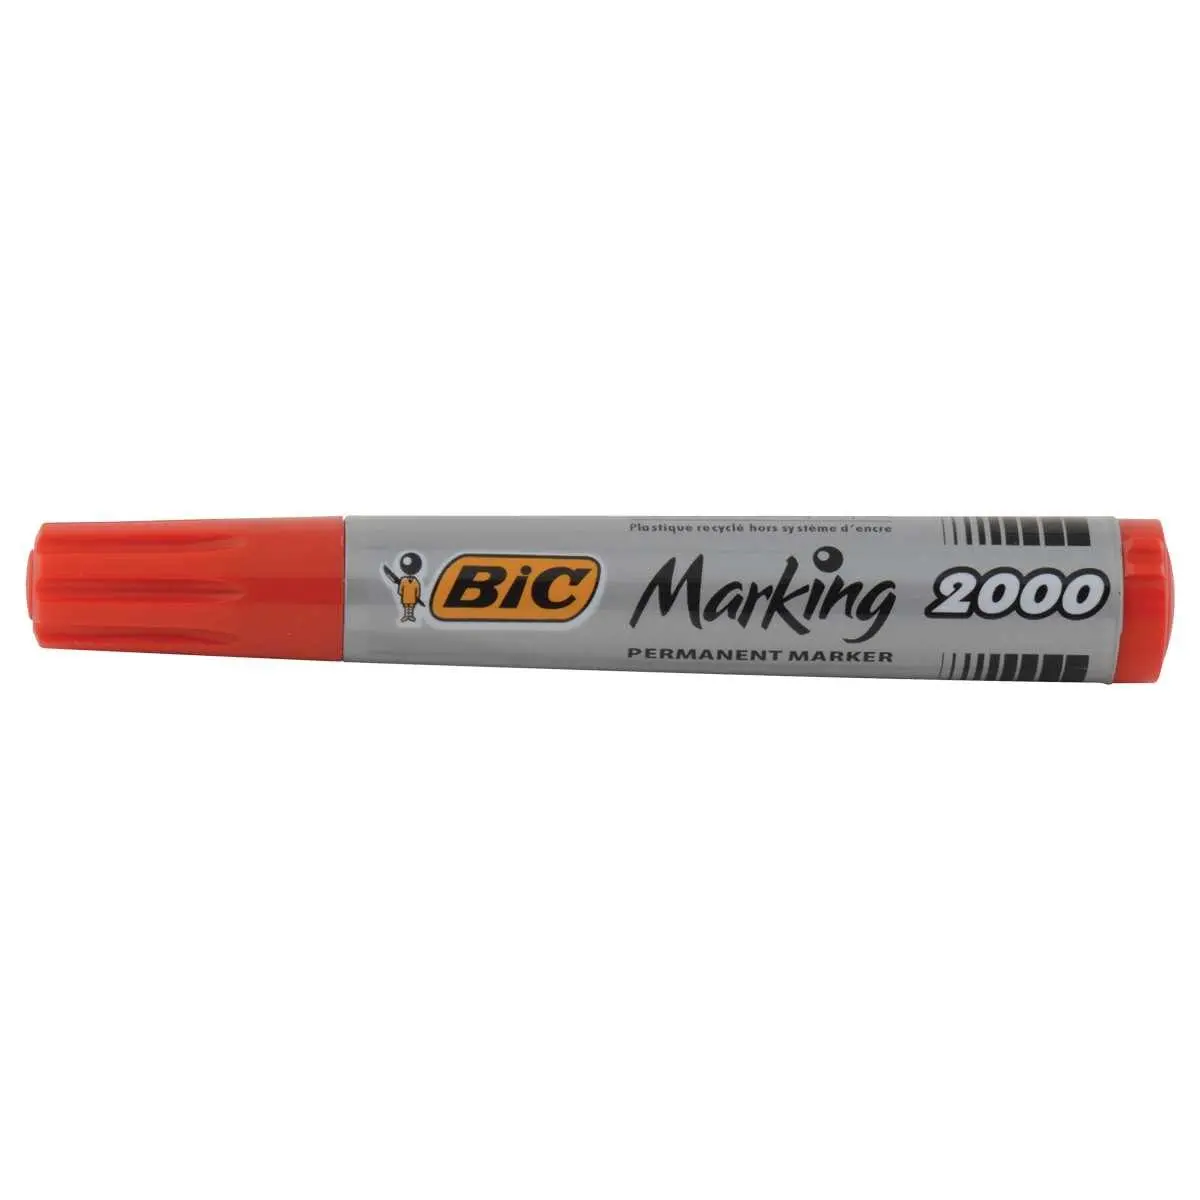 Marqueur permanent Marking 2000 de BIC - pointe ogive - Rouge photo du produit